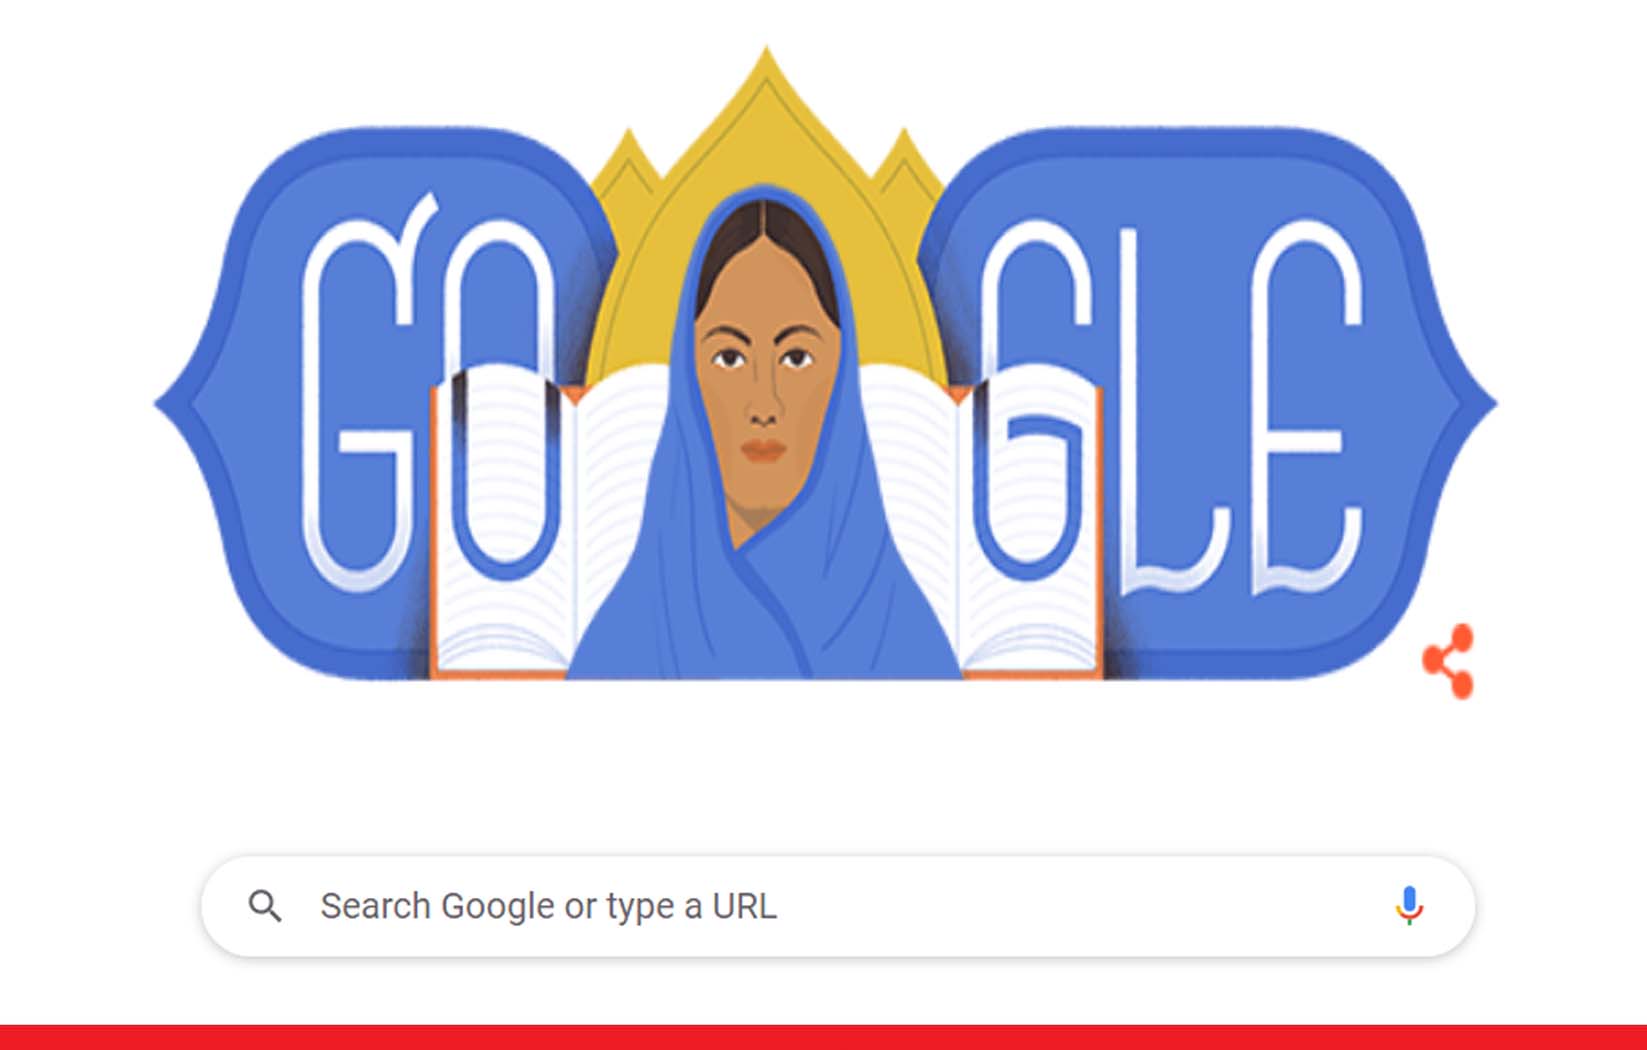 फातिमा शेख की 191वीं जयंती पर गूगल ने डूडल बनाकर किया उन्हें याद